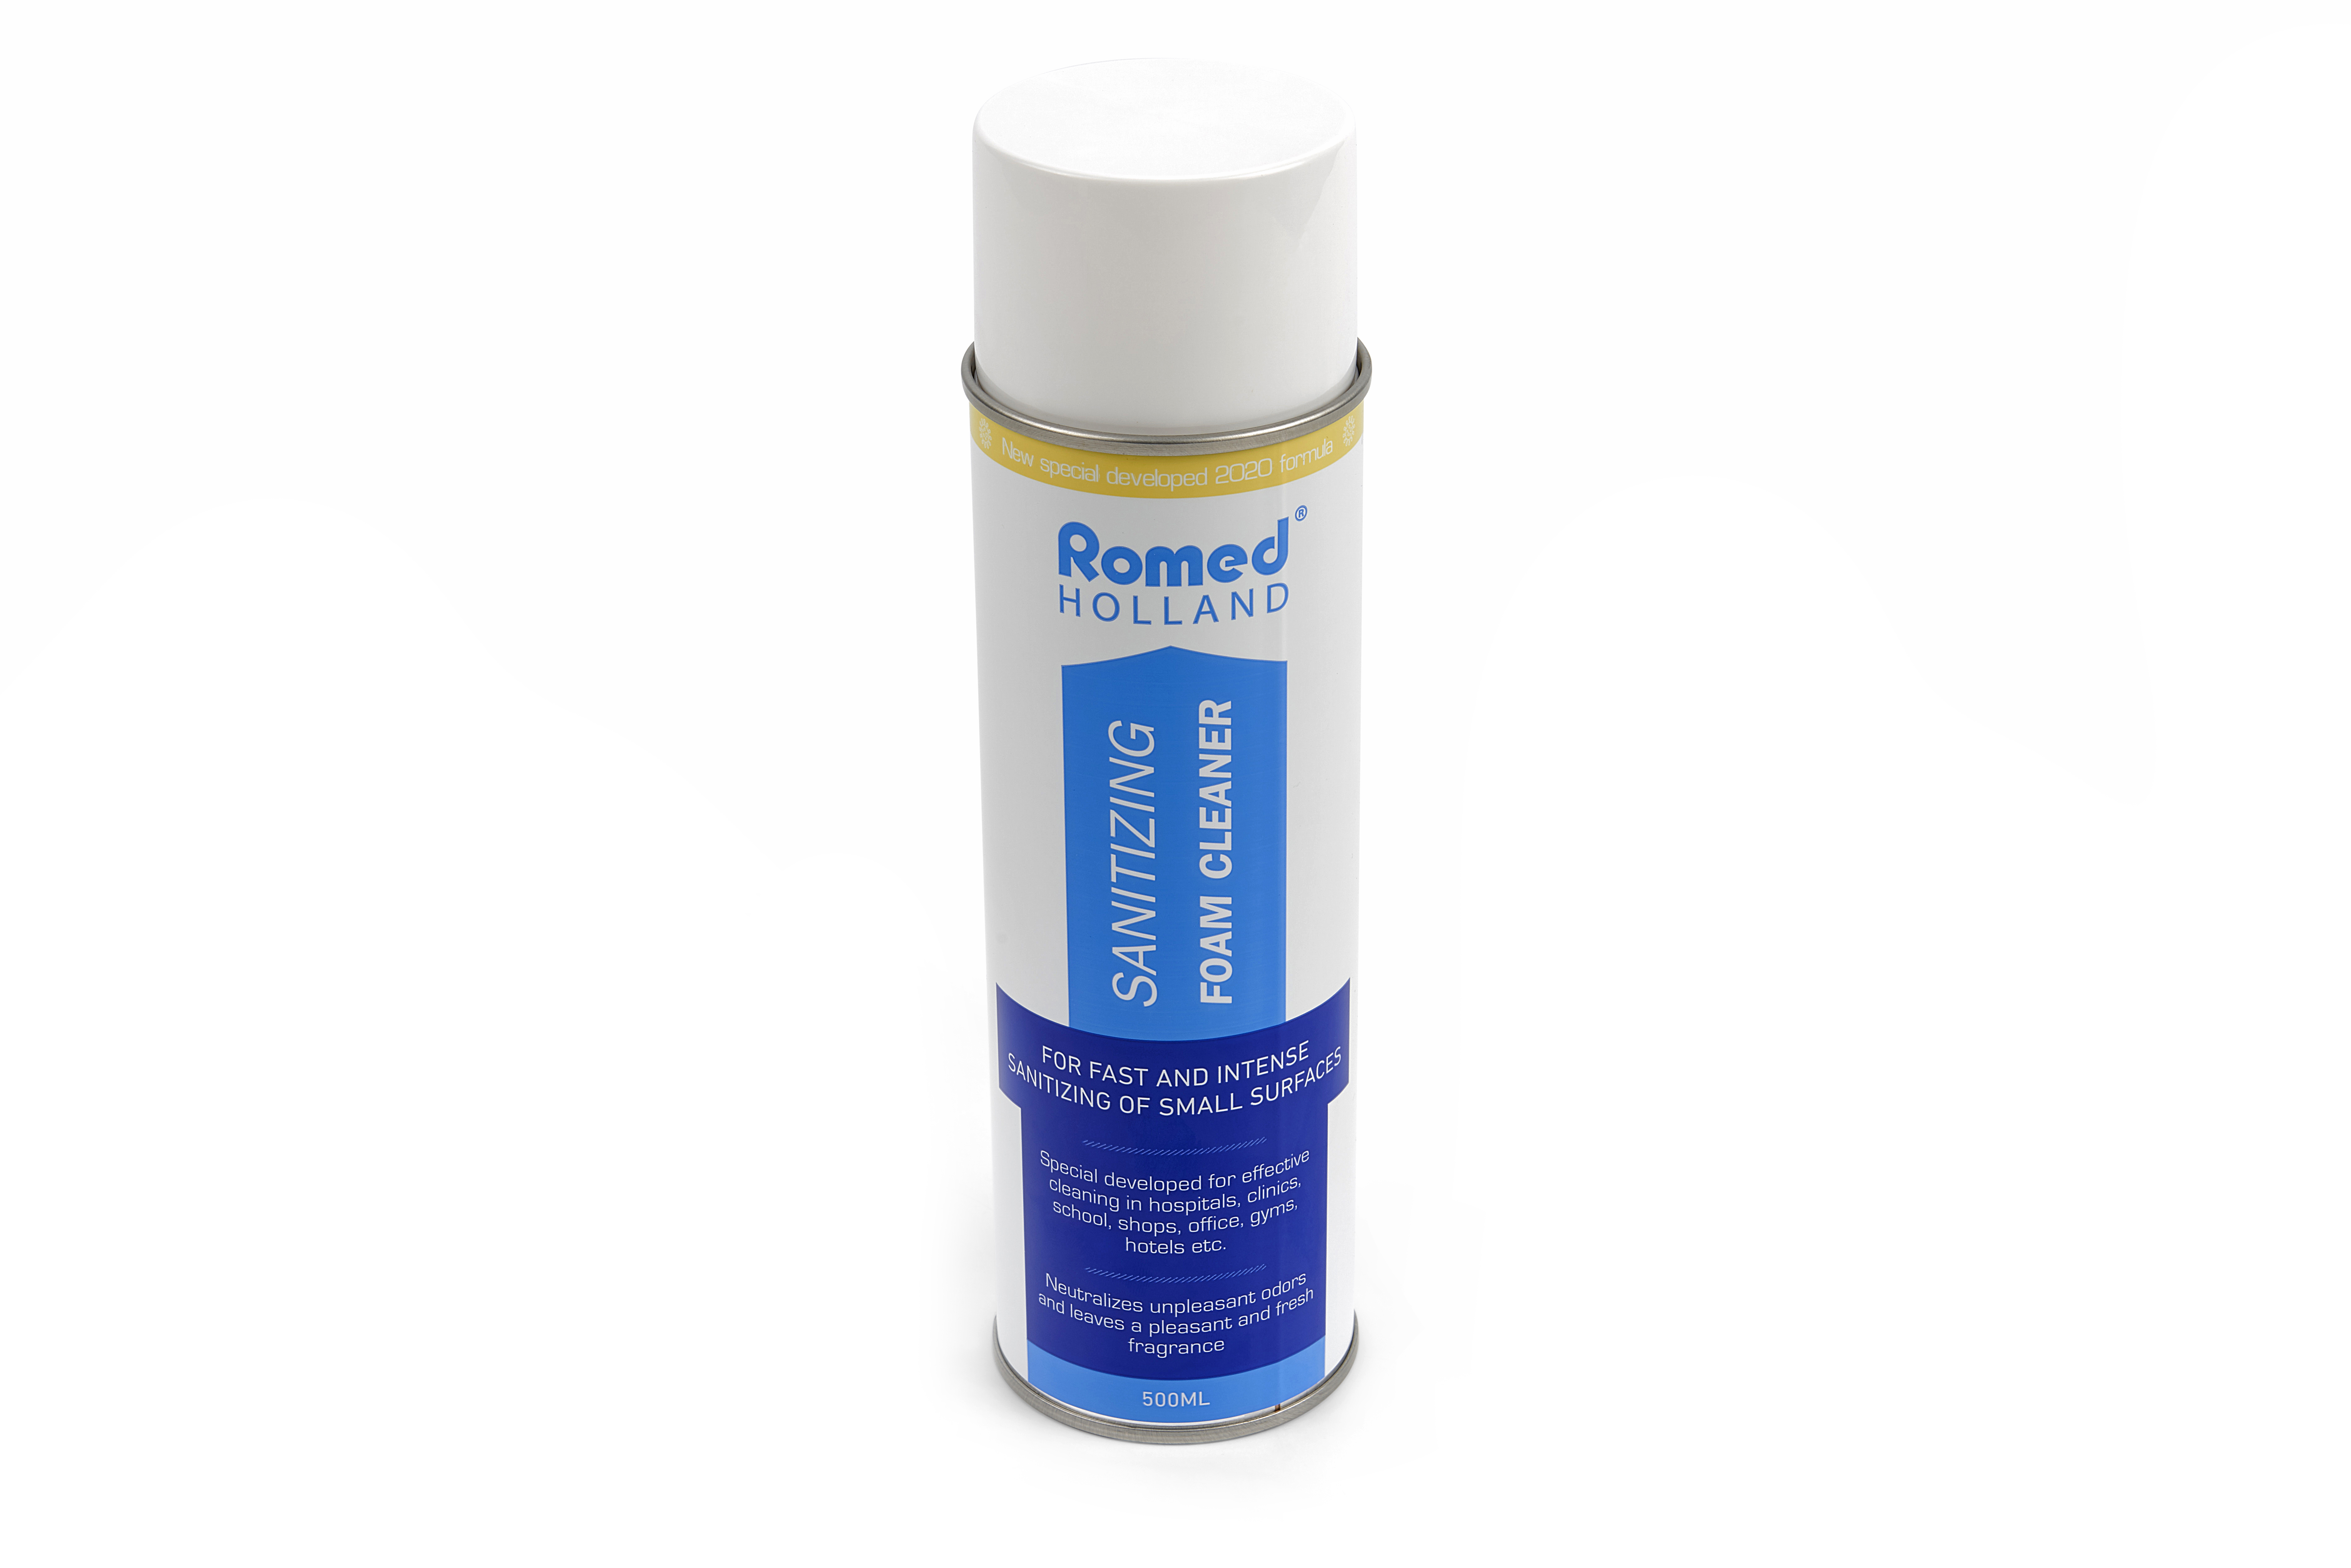 COV19-FOAM Espuma desinfectante Romed, para la desinfección rápida e intensa de superficies pequeñas. 12 aerosoles, 500 ml, en una caja de cartón.